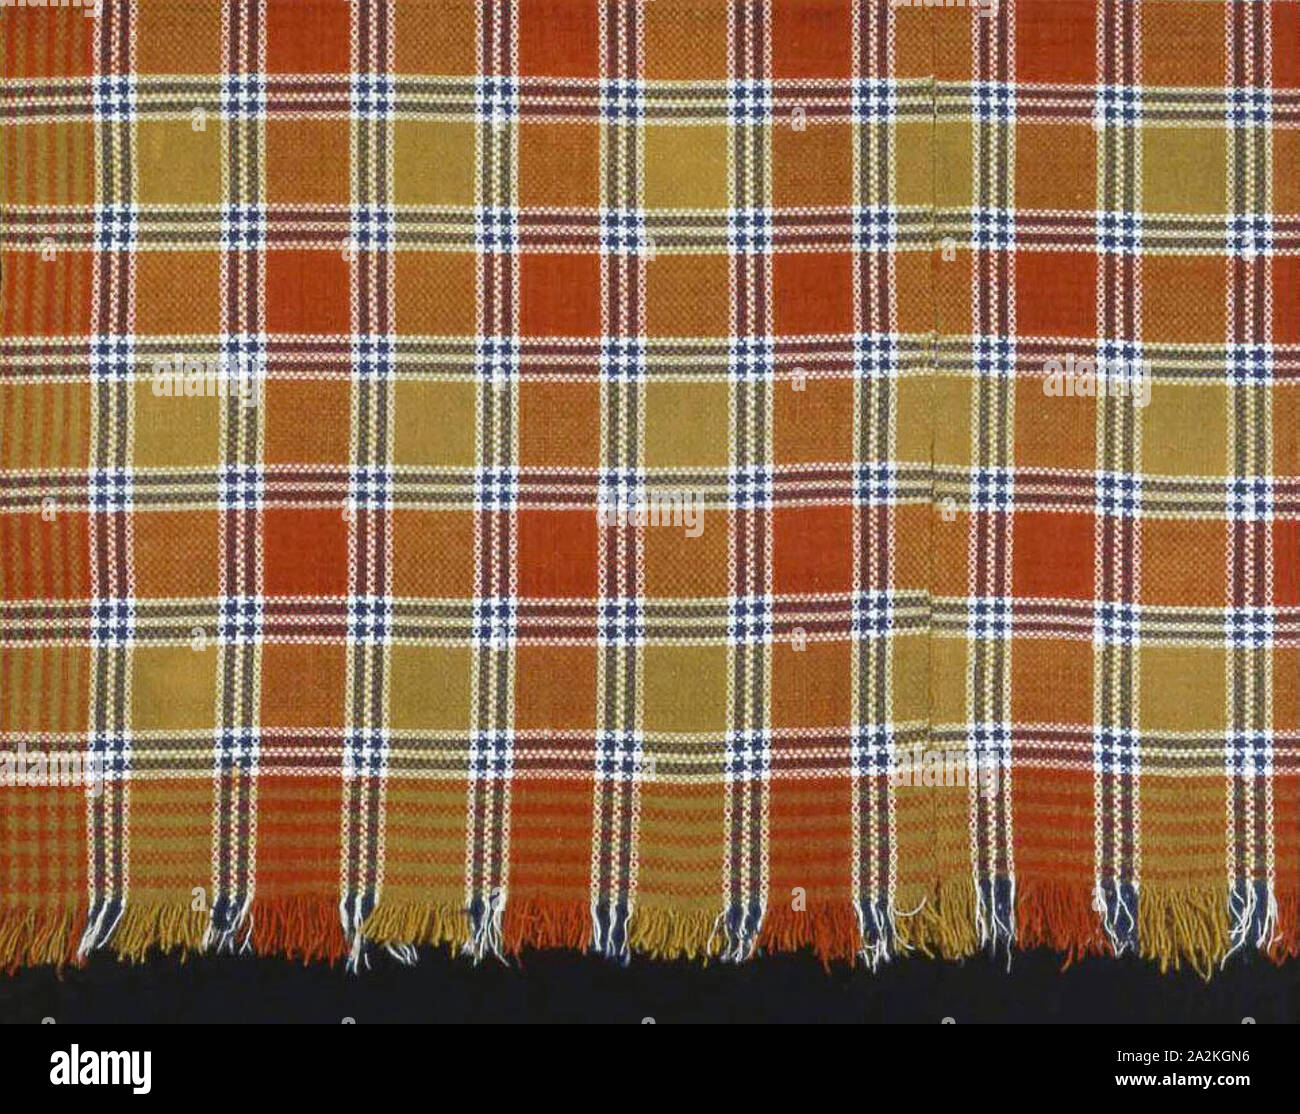 Coverlet, 1820s/30s, Stati Uniti, lana e cotone, punto saia multiple (albero) con ordito principale fringe, due altezze di telaio uniti, 213.1 x 184.9 cm (84 x 72 7/8 in Foto Stock